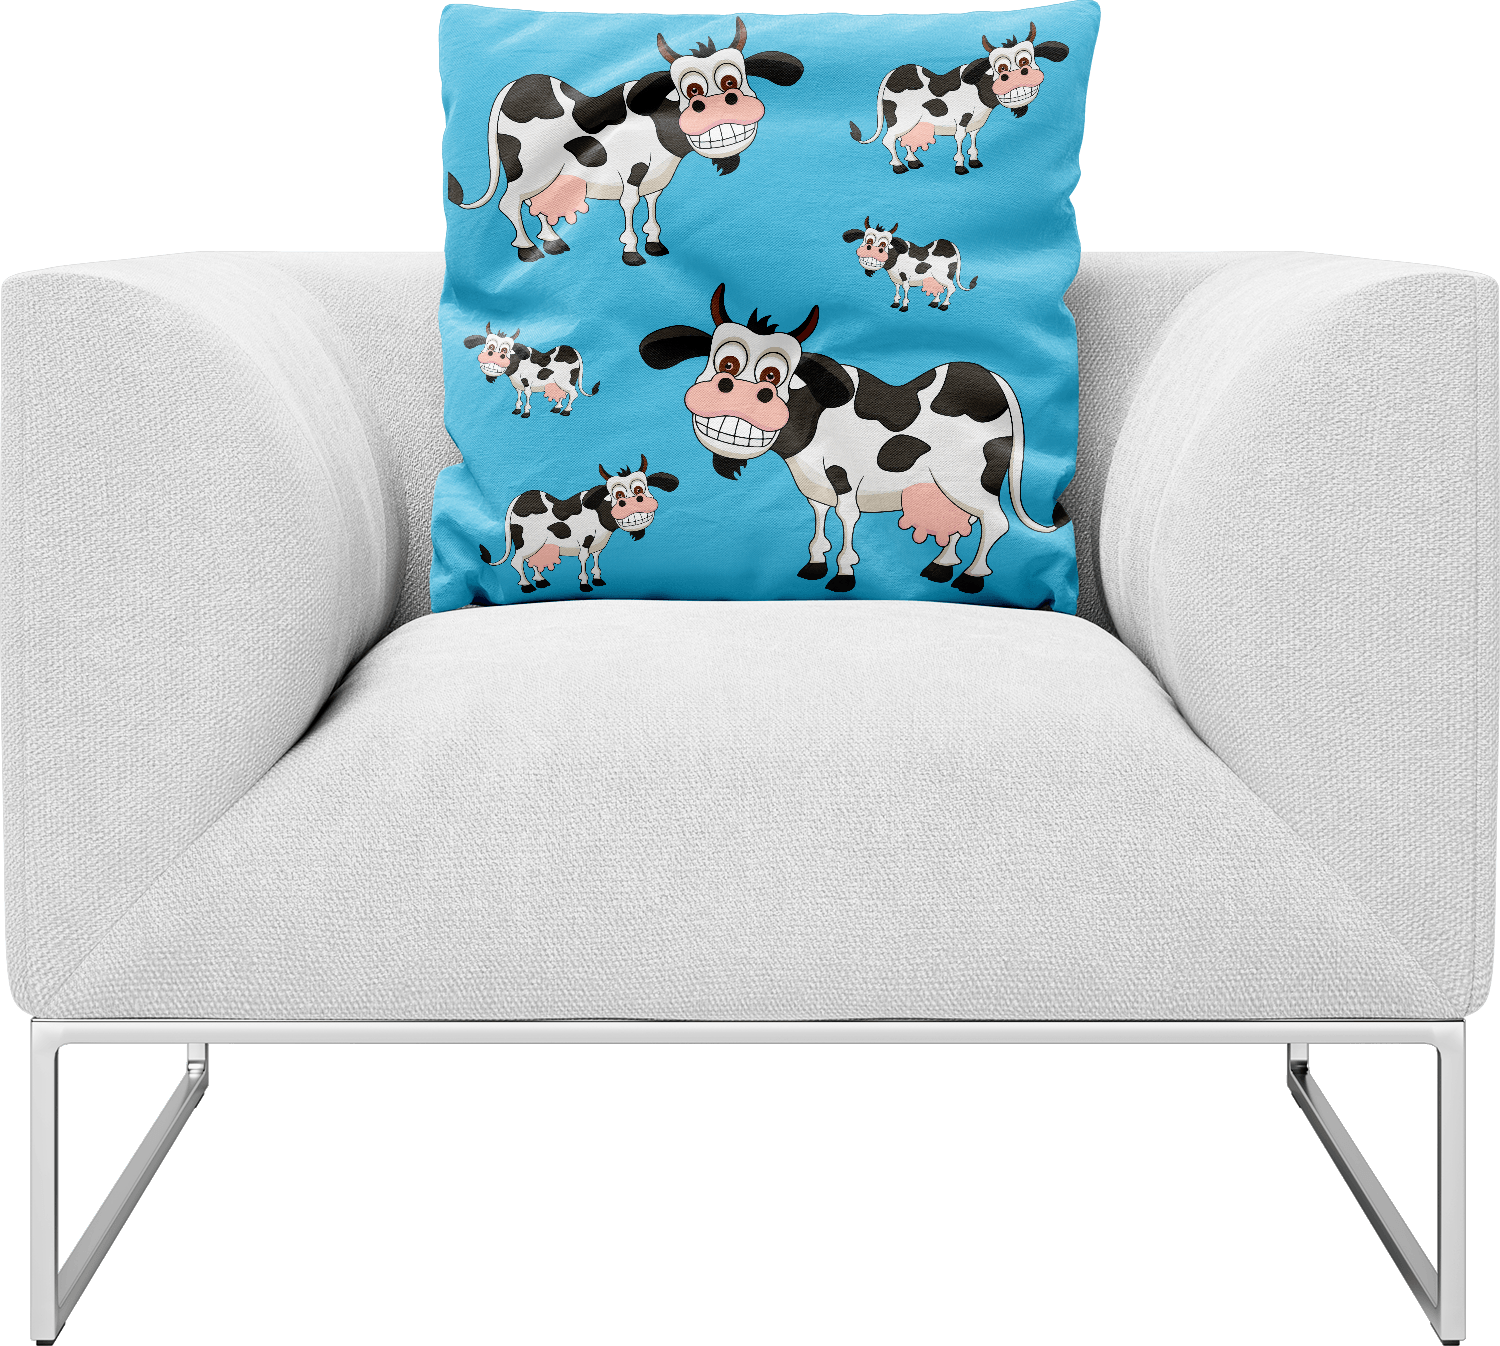 Fussy Cow Pillows Cushions - fungear.com.au